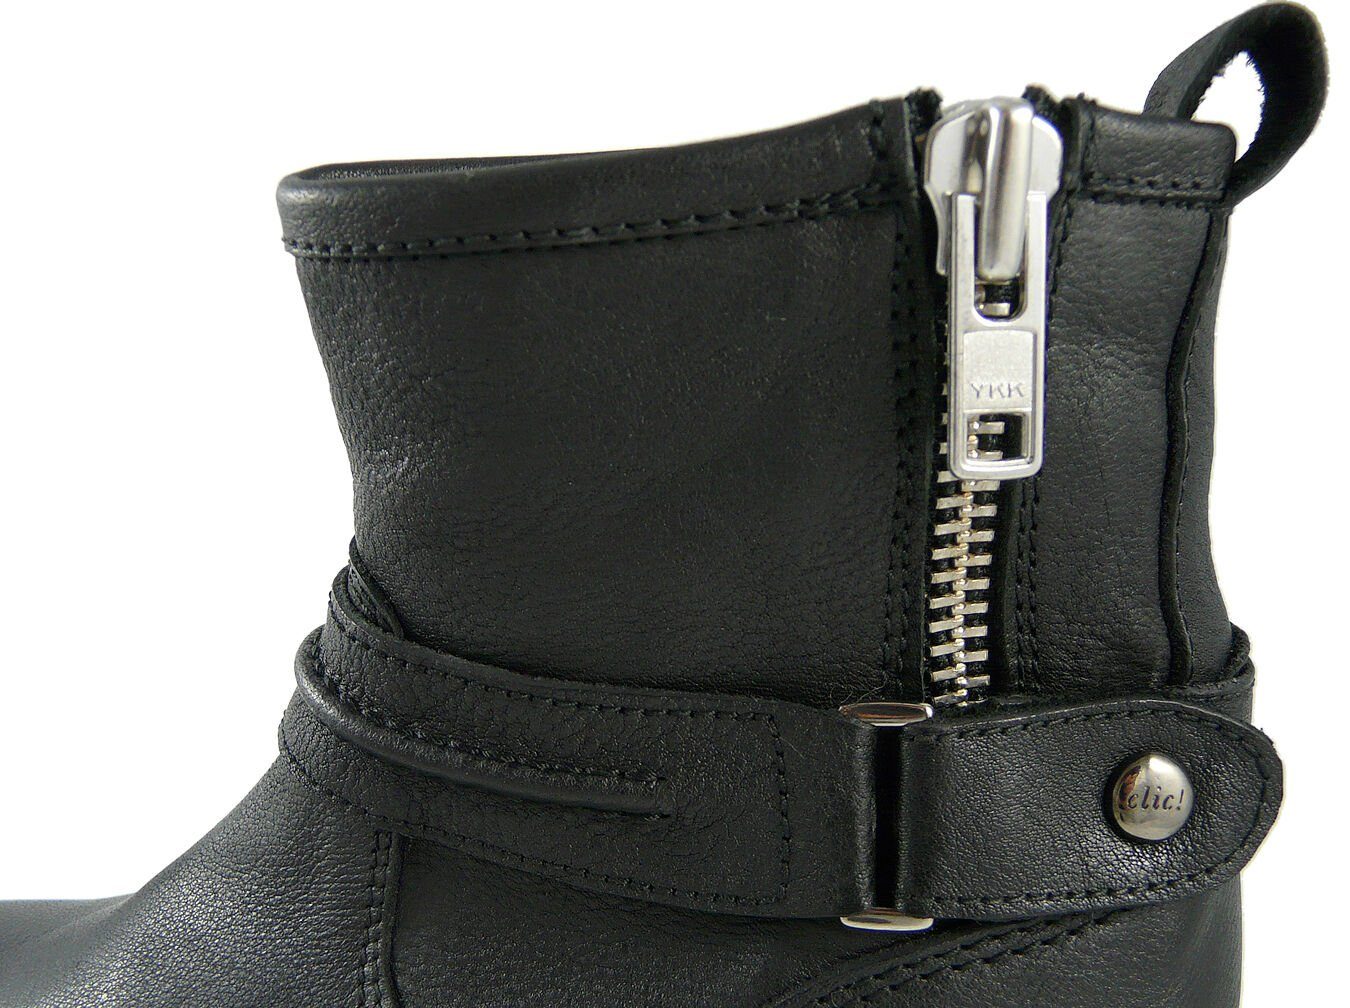 Clic! Schnürstiefelette Clic Leder schmal schwarz Stiefeletten CL-8601 Stiefel Schuhe